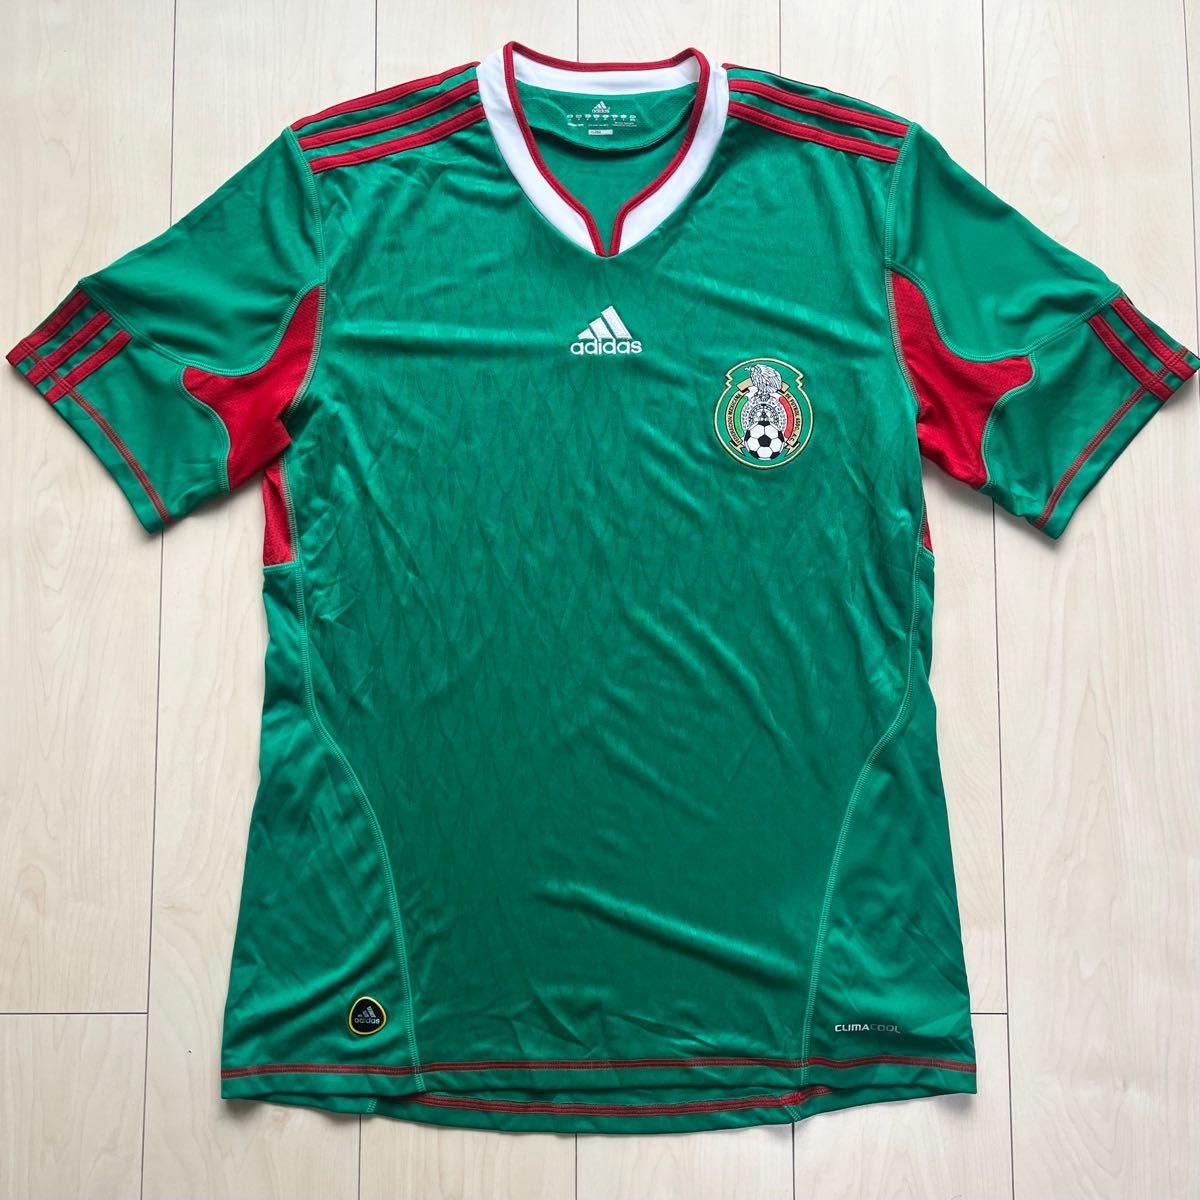 adidas アディダス  ワールドカップ サッカー 2010 メキシコ代表 ユニフォーム O